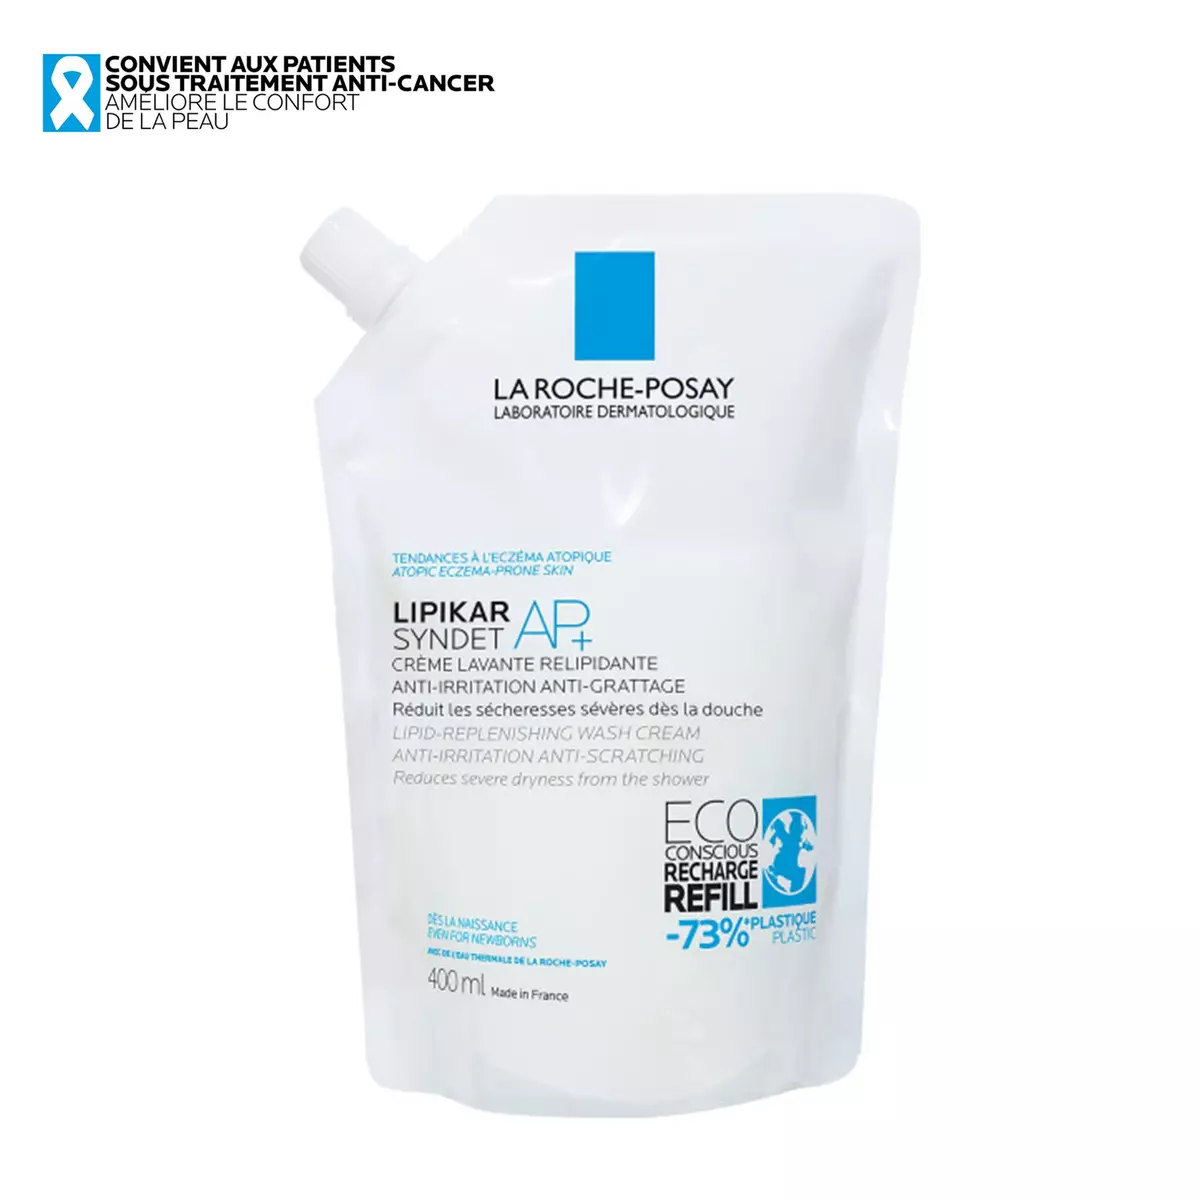 LA ROCHE POSAY Lipikiar Syndet AP+ Crème lavante relipidante anti irritations & grattages 1 crème 400ml + 1 recharge 400ml